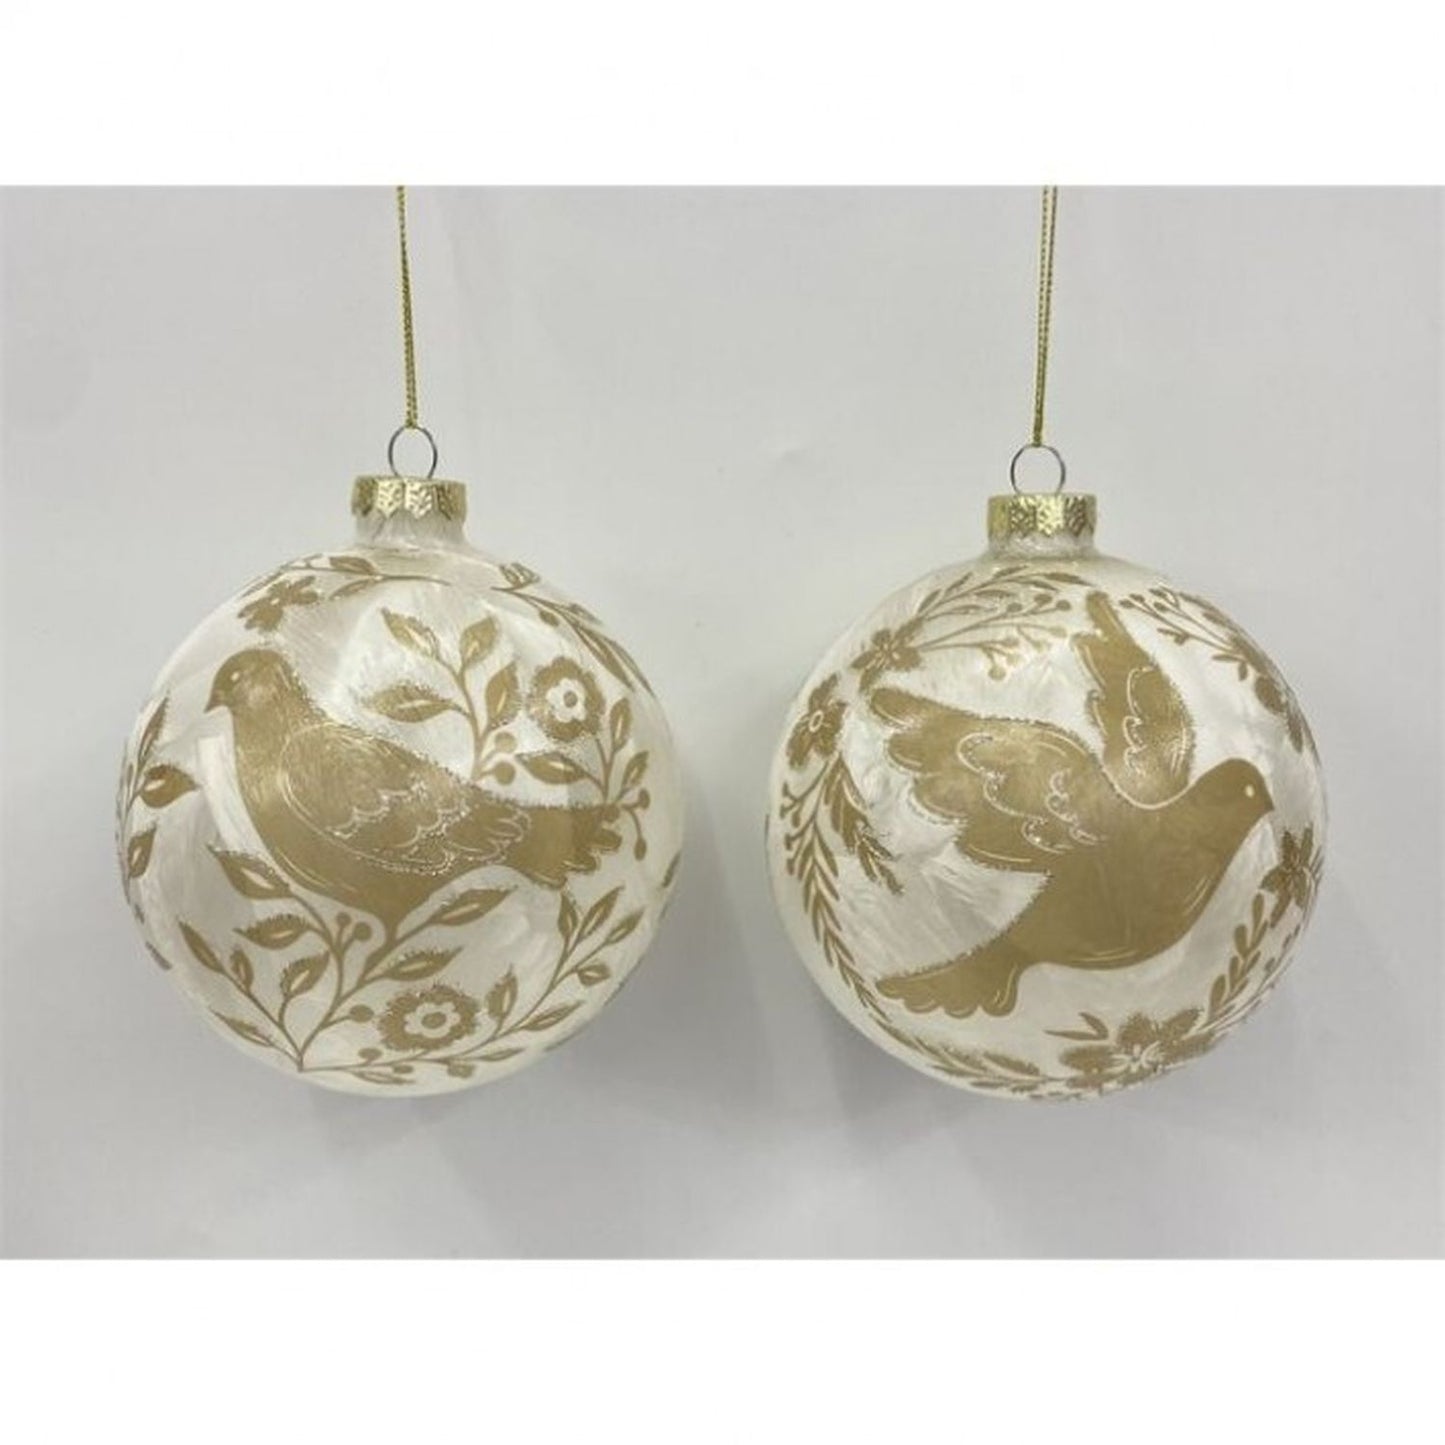 Regency International 5" Glass Gilded Dove Ball Ornament, Set of 2, Assortment